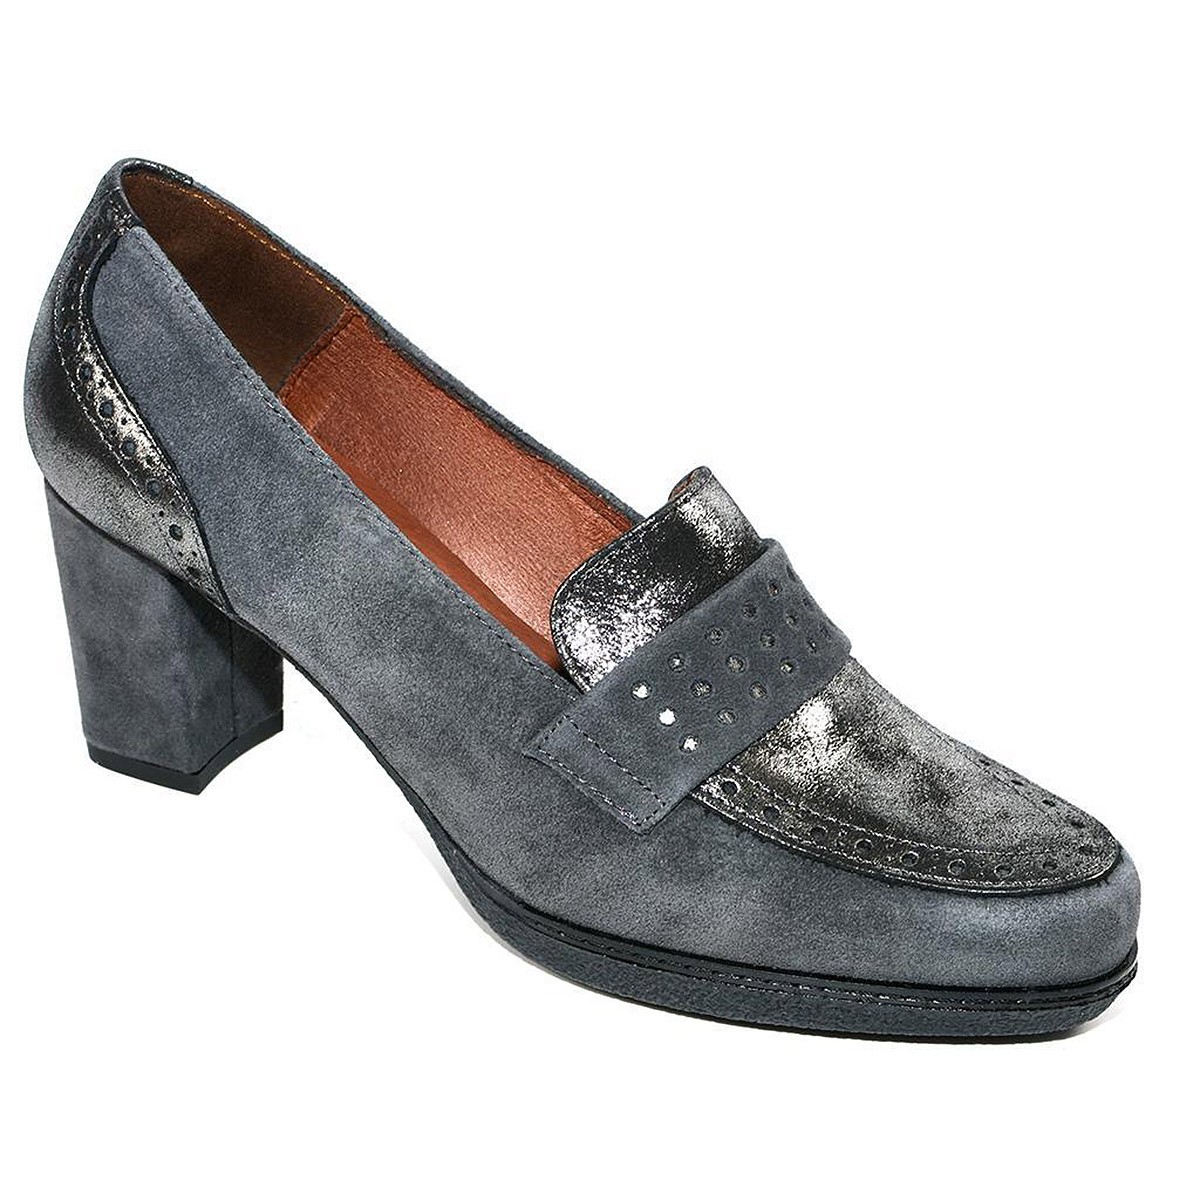 82516 Desireé Zapato Comprar Zapato de piel serraje y piel metalizada en pala y talón. Forro textil. Plantilla confort. Platafor